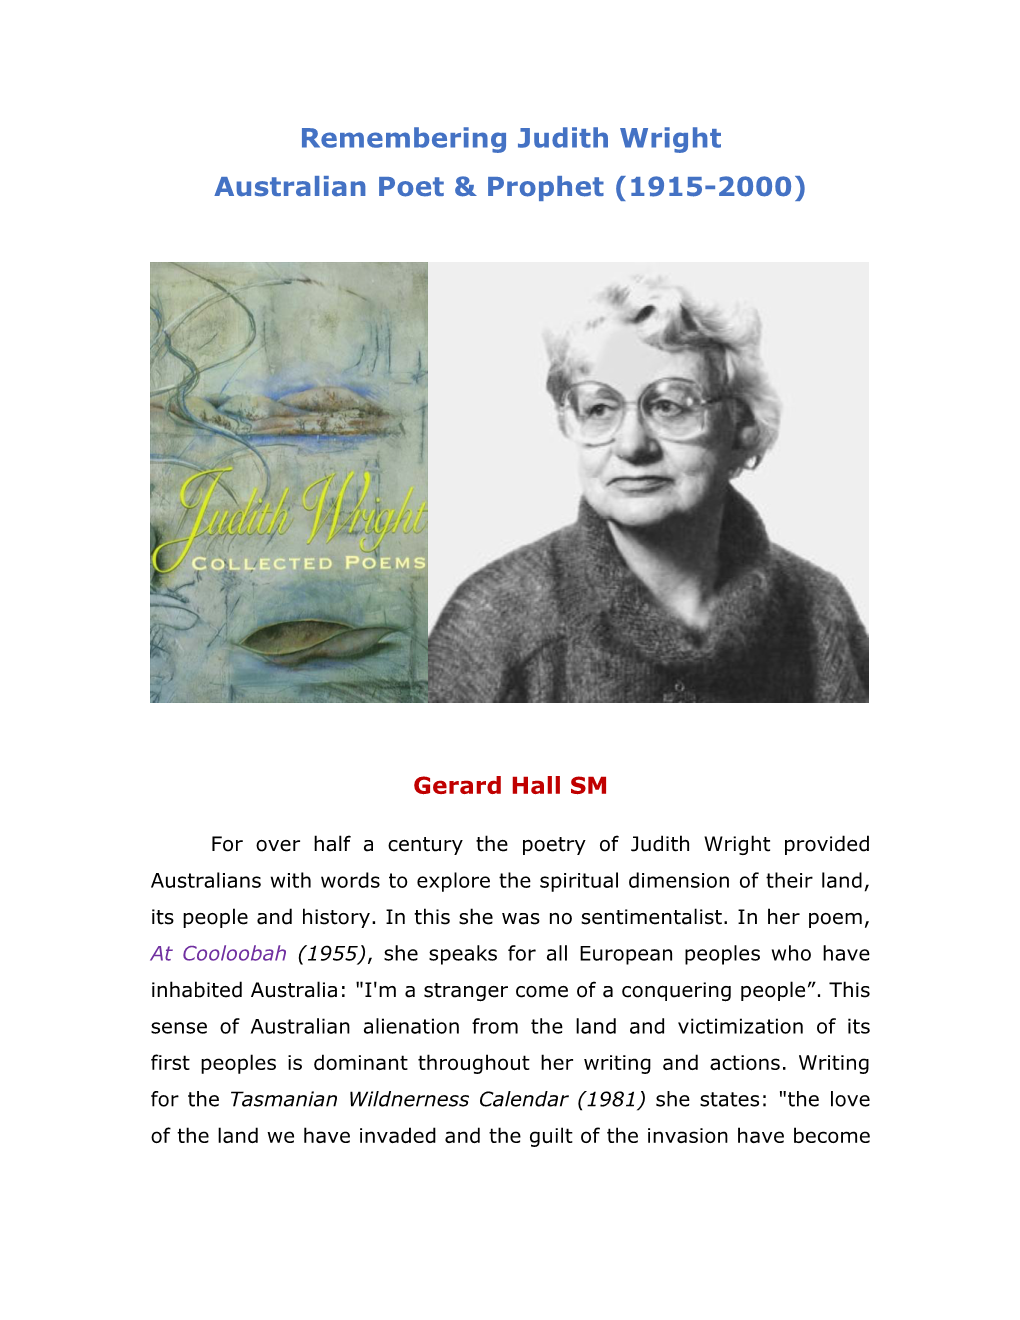 Judith Wright Australian Poet & Prophet (1915-2000)